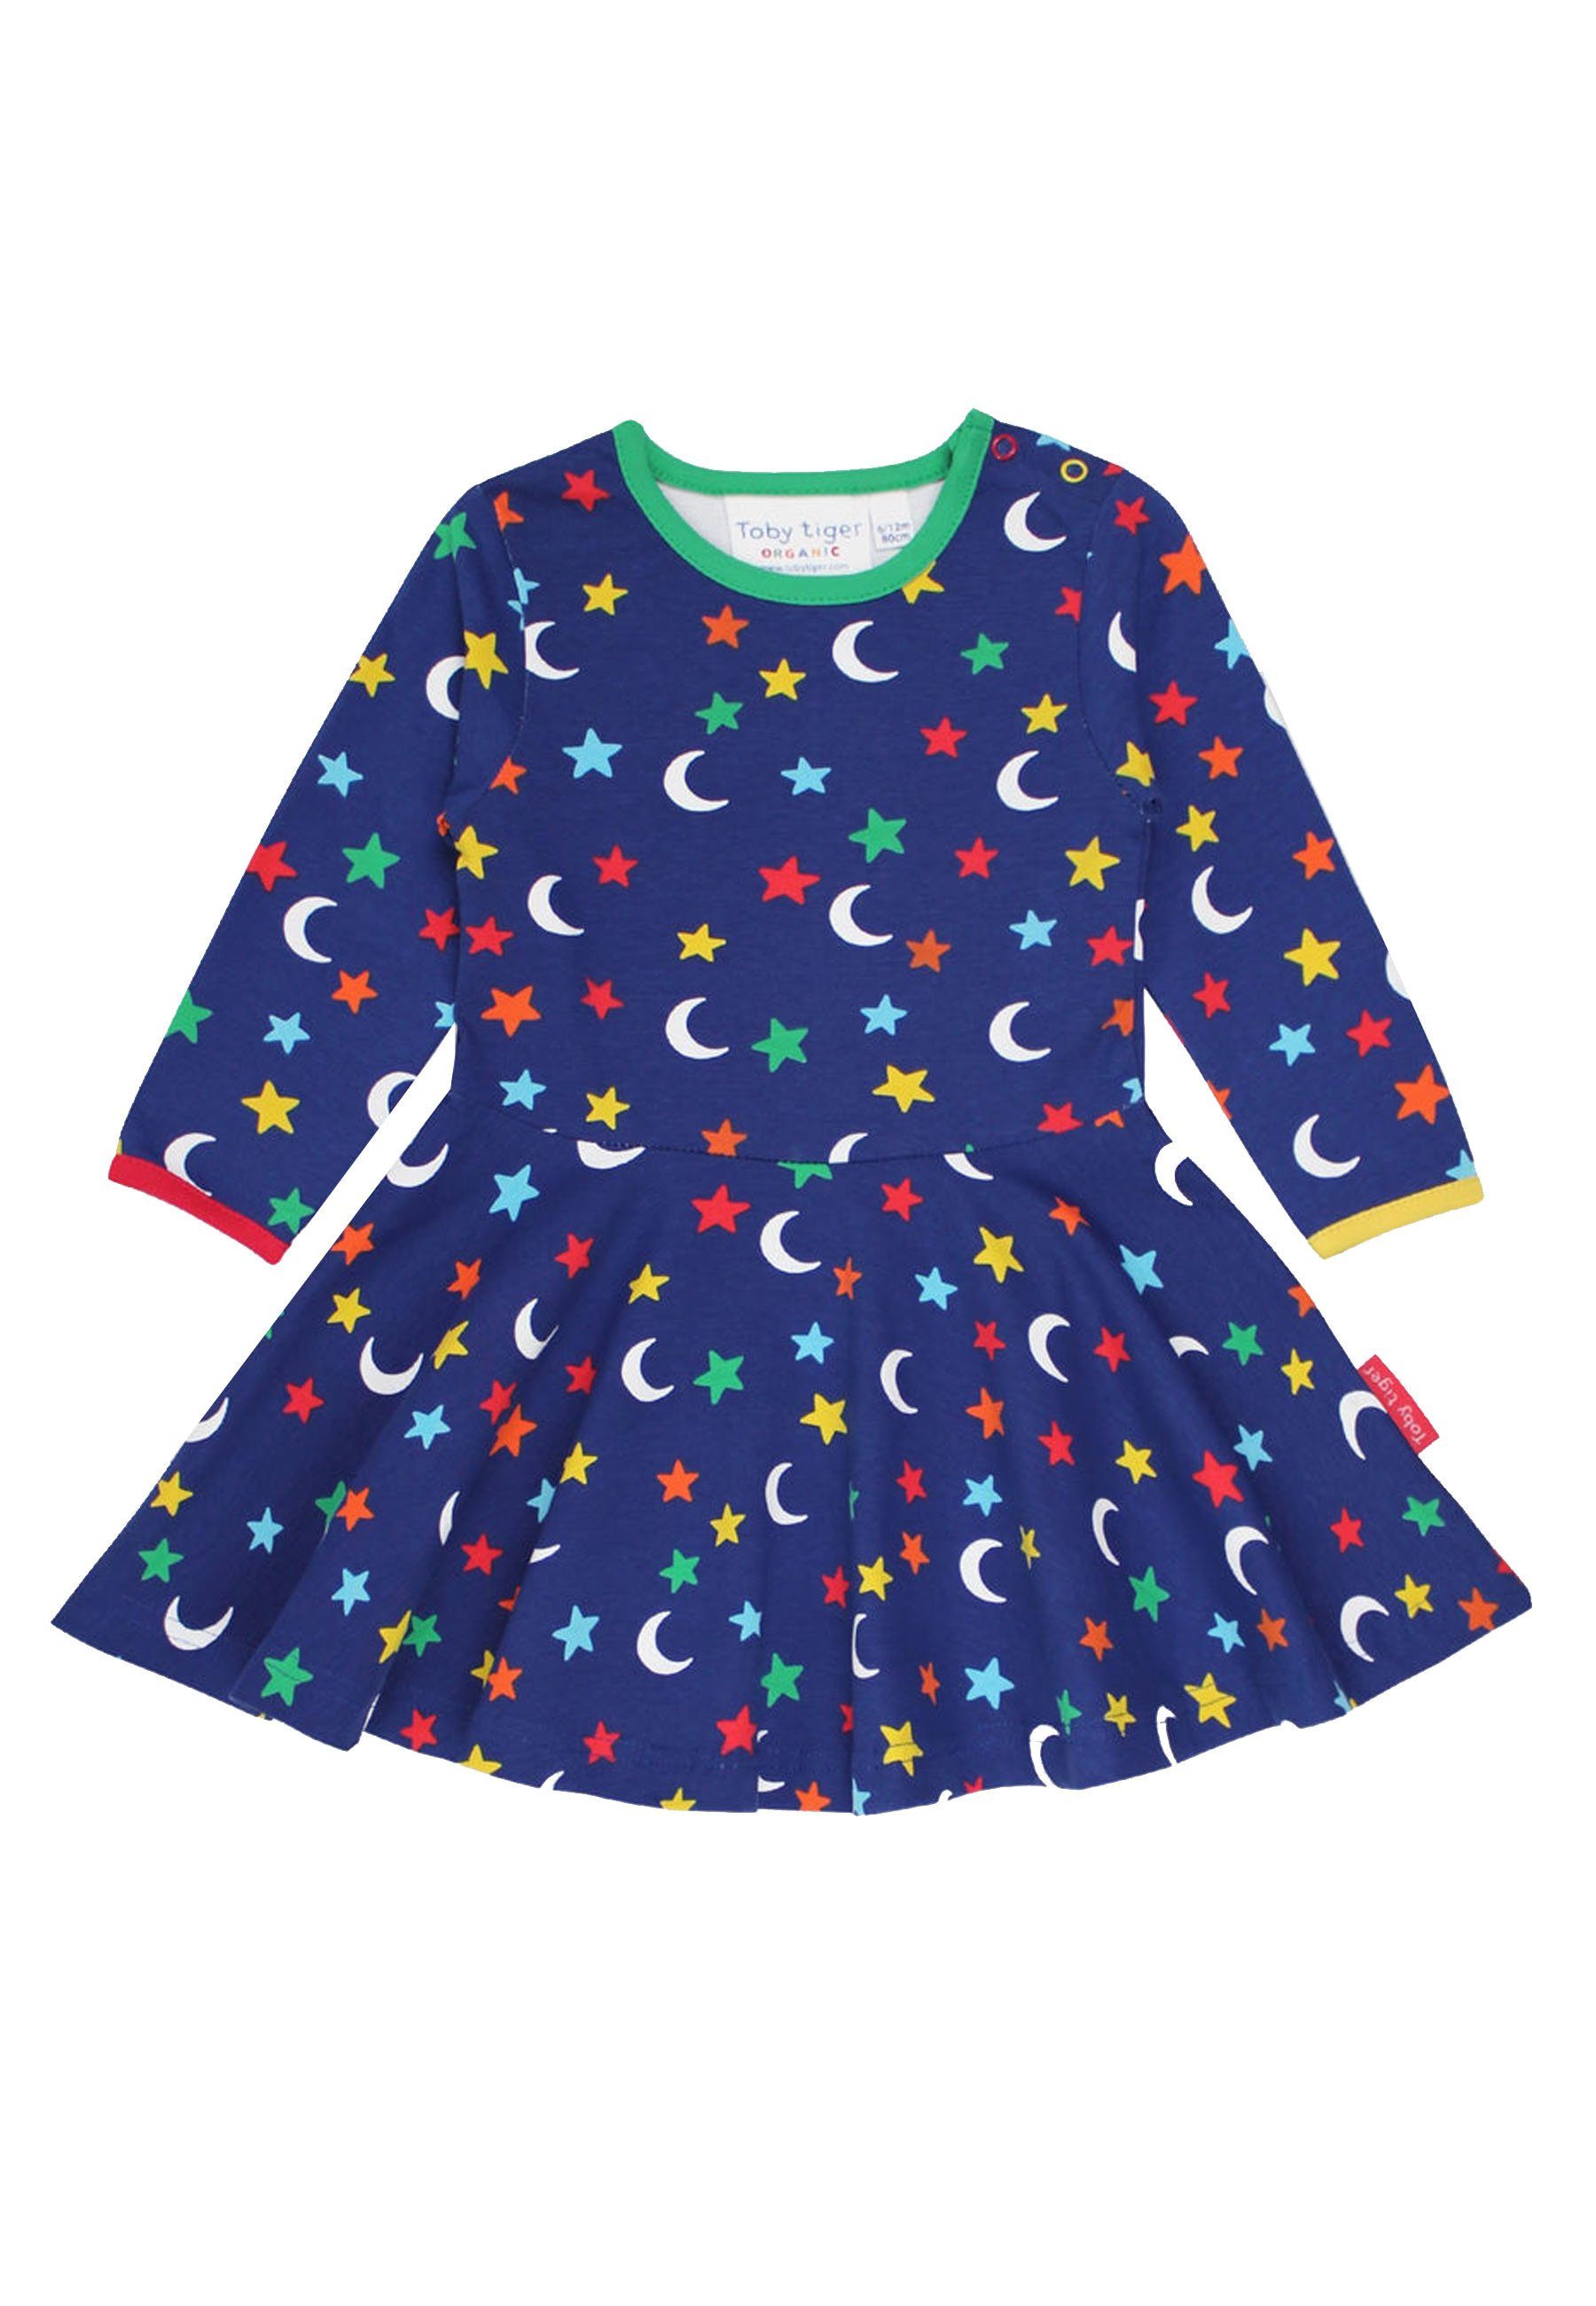 Toby Tiger Shirtkleid Skater Kleid mit Mond und Sterne Print